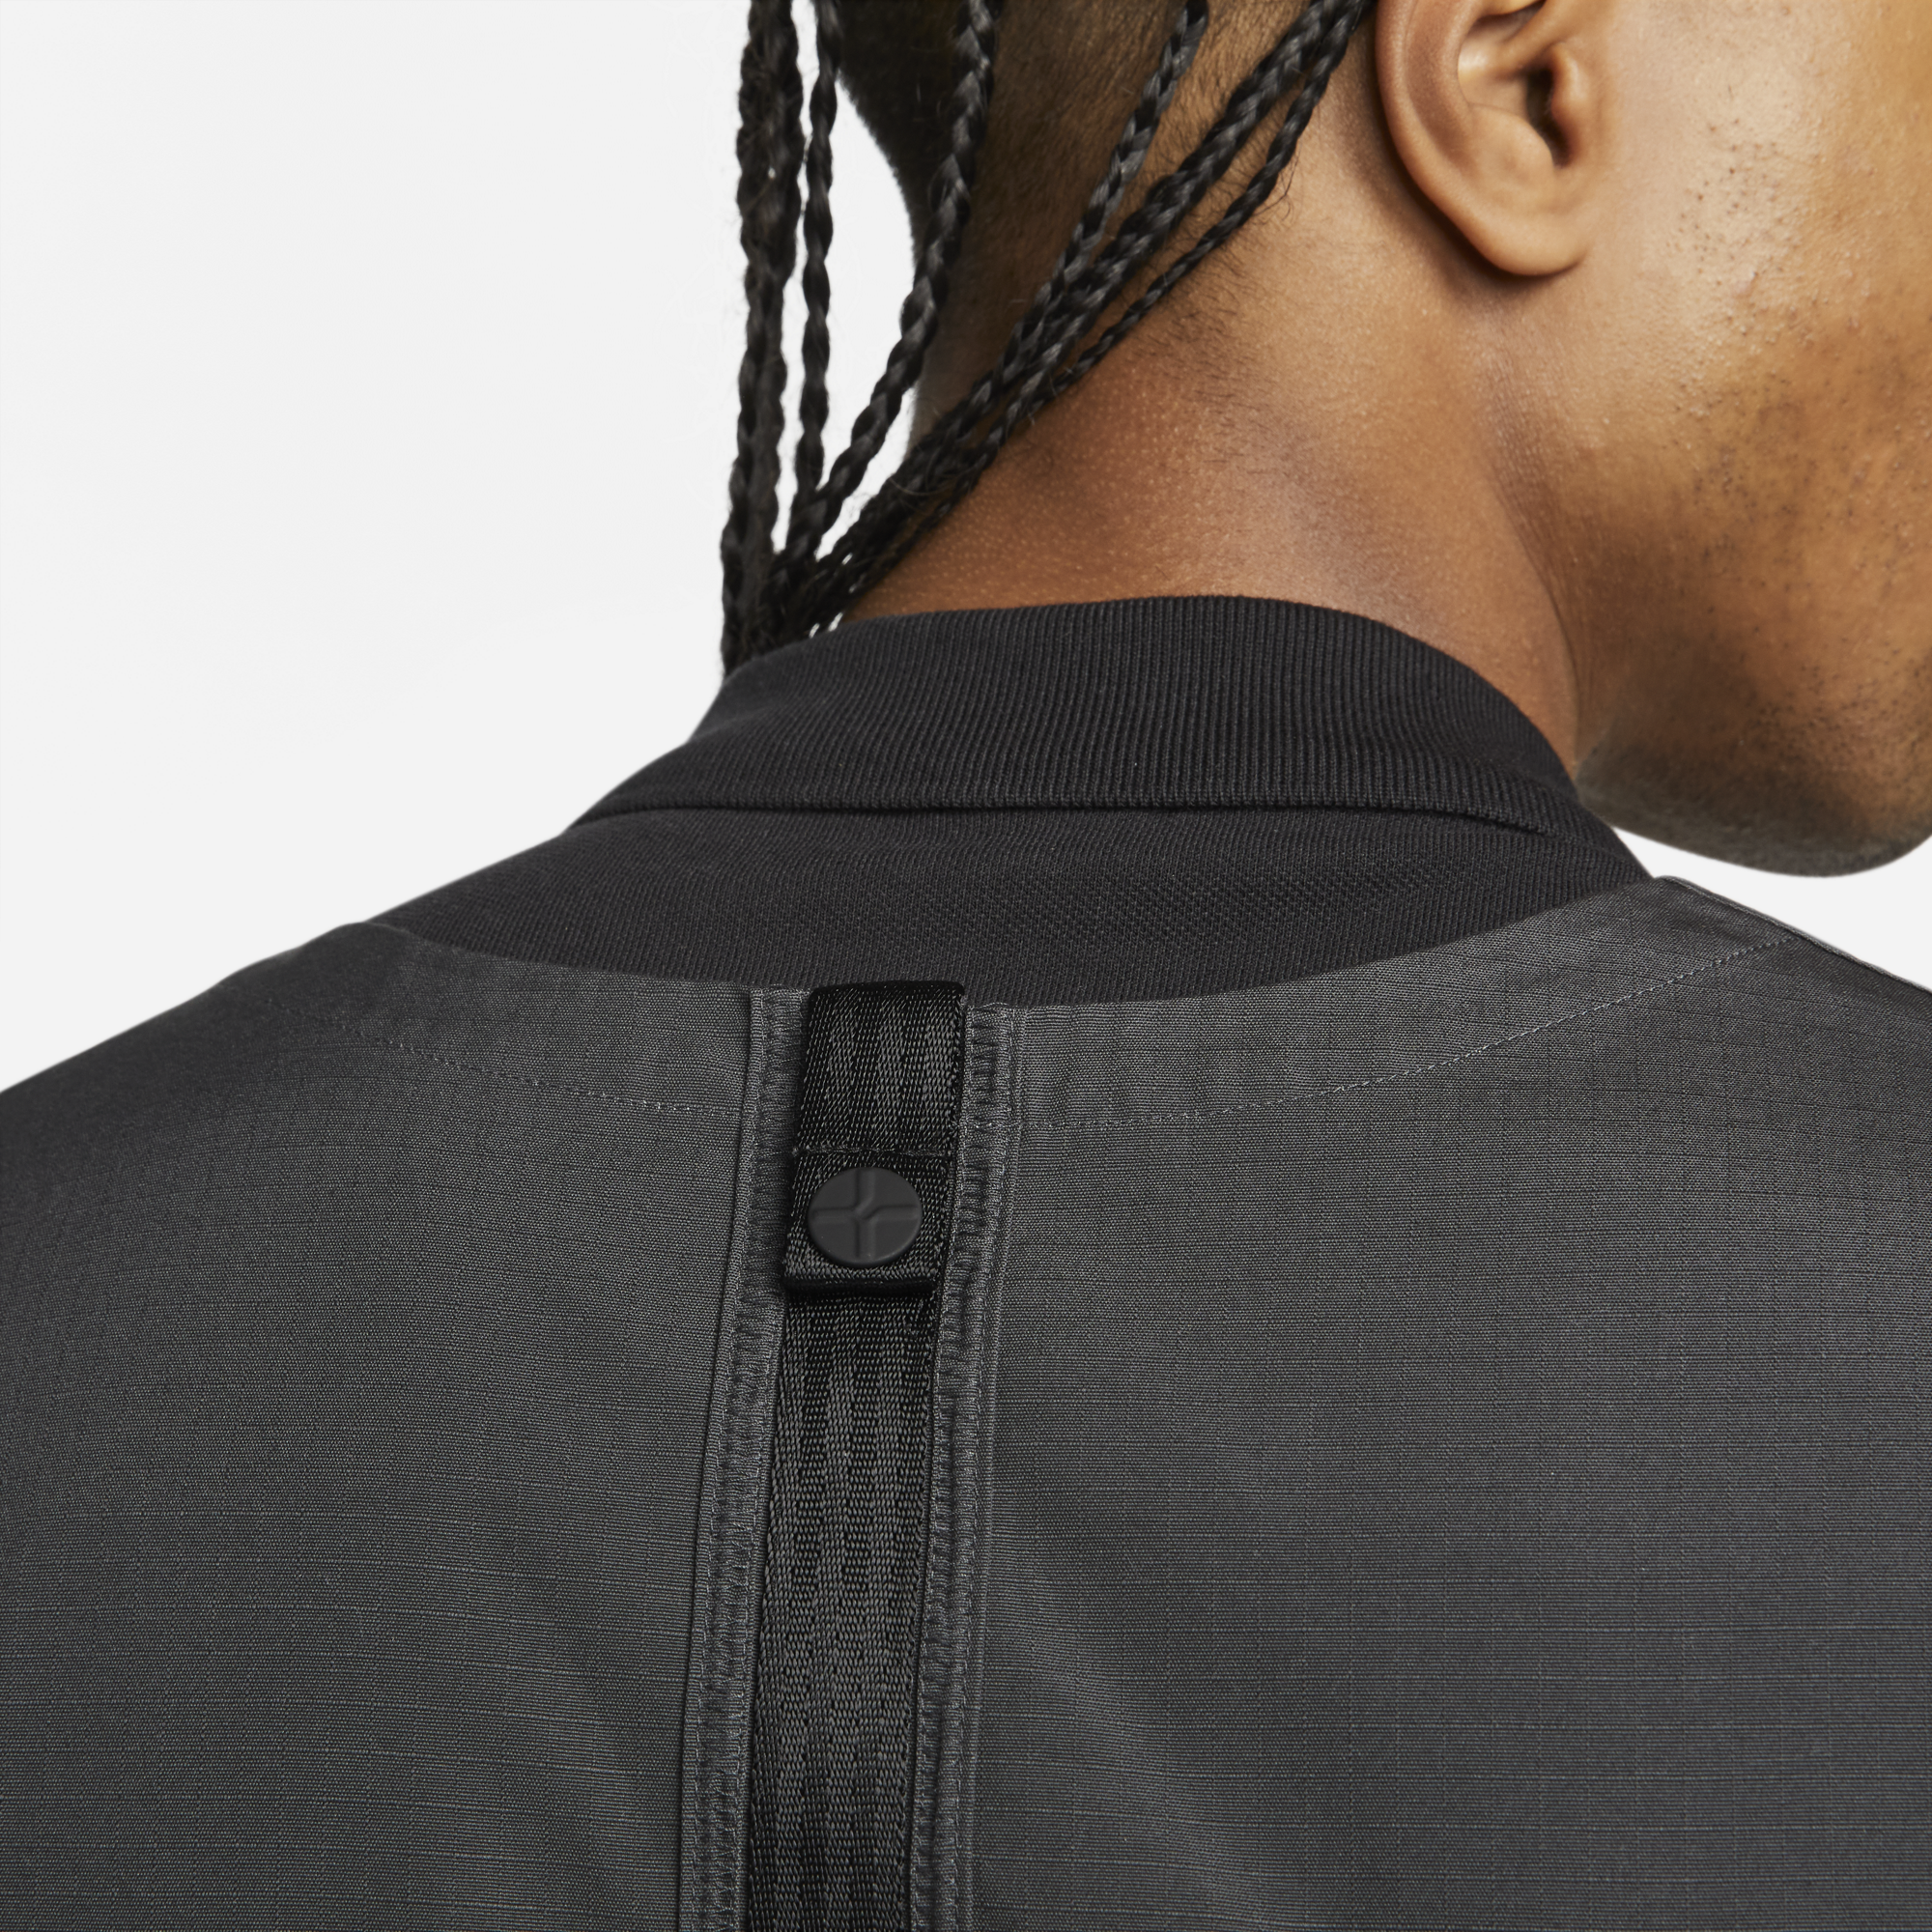 Nike Sportswear Tech Pack Men's Unlined Vest, Twine/Black, SMALL